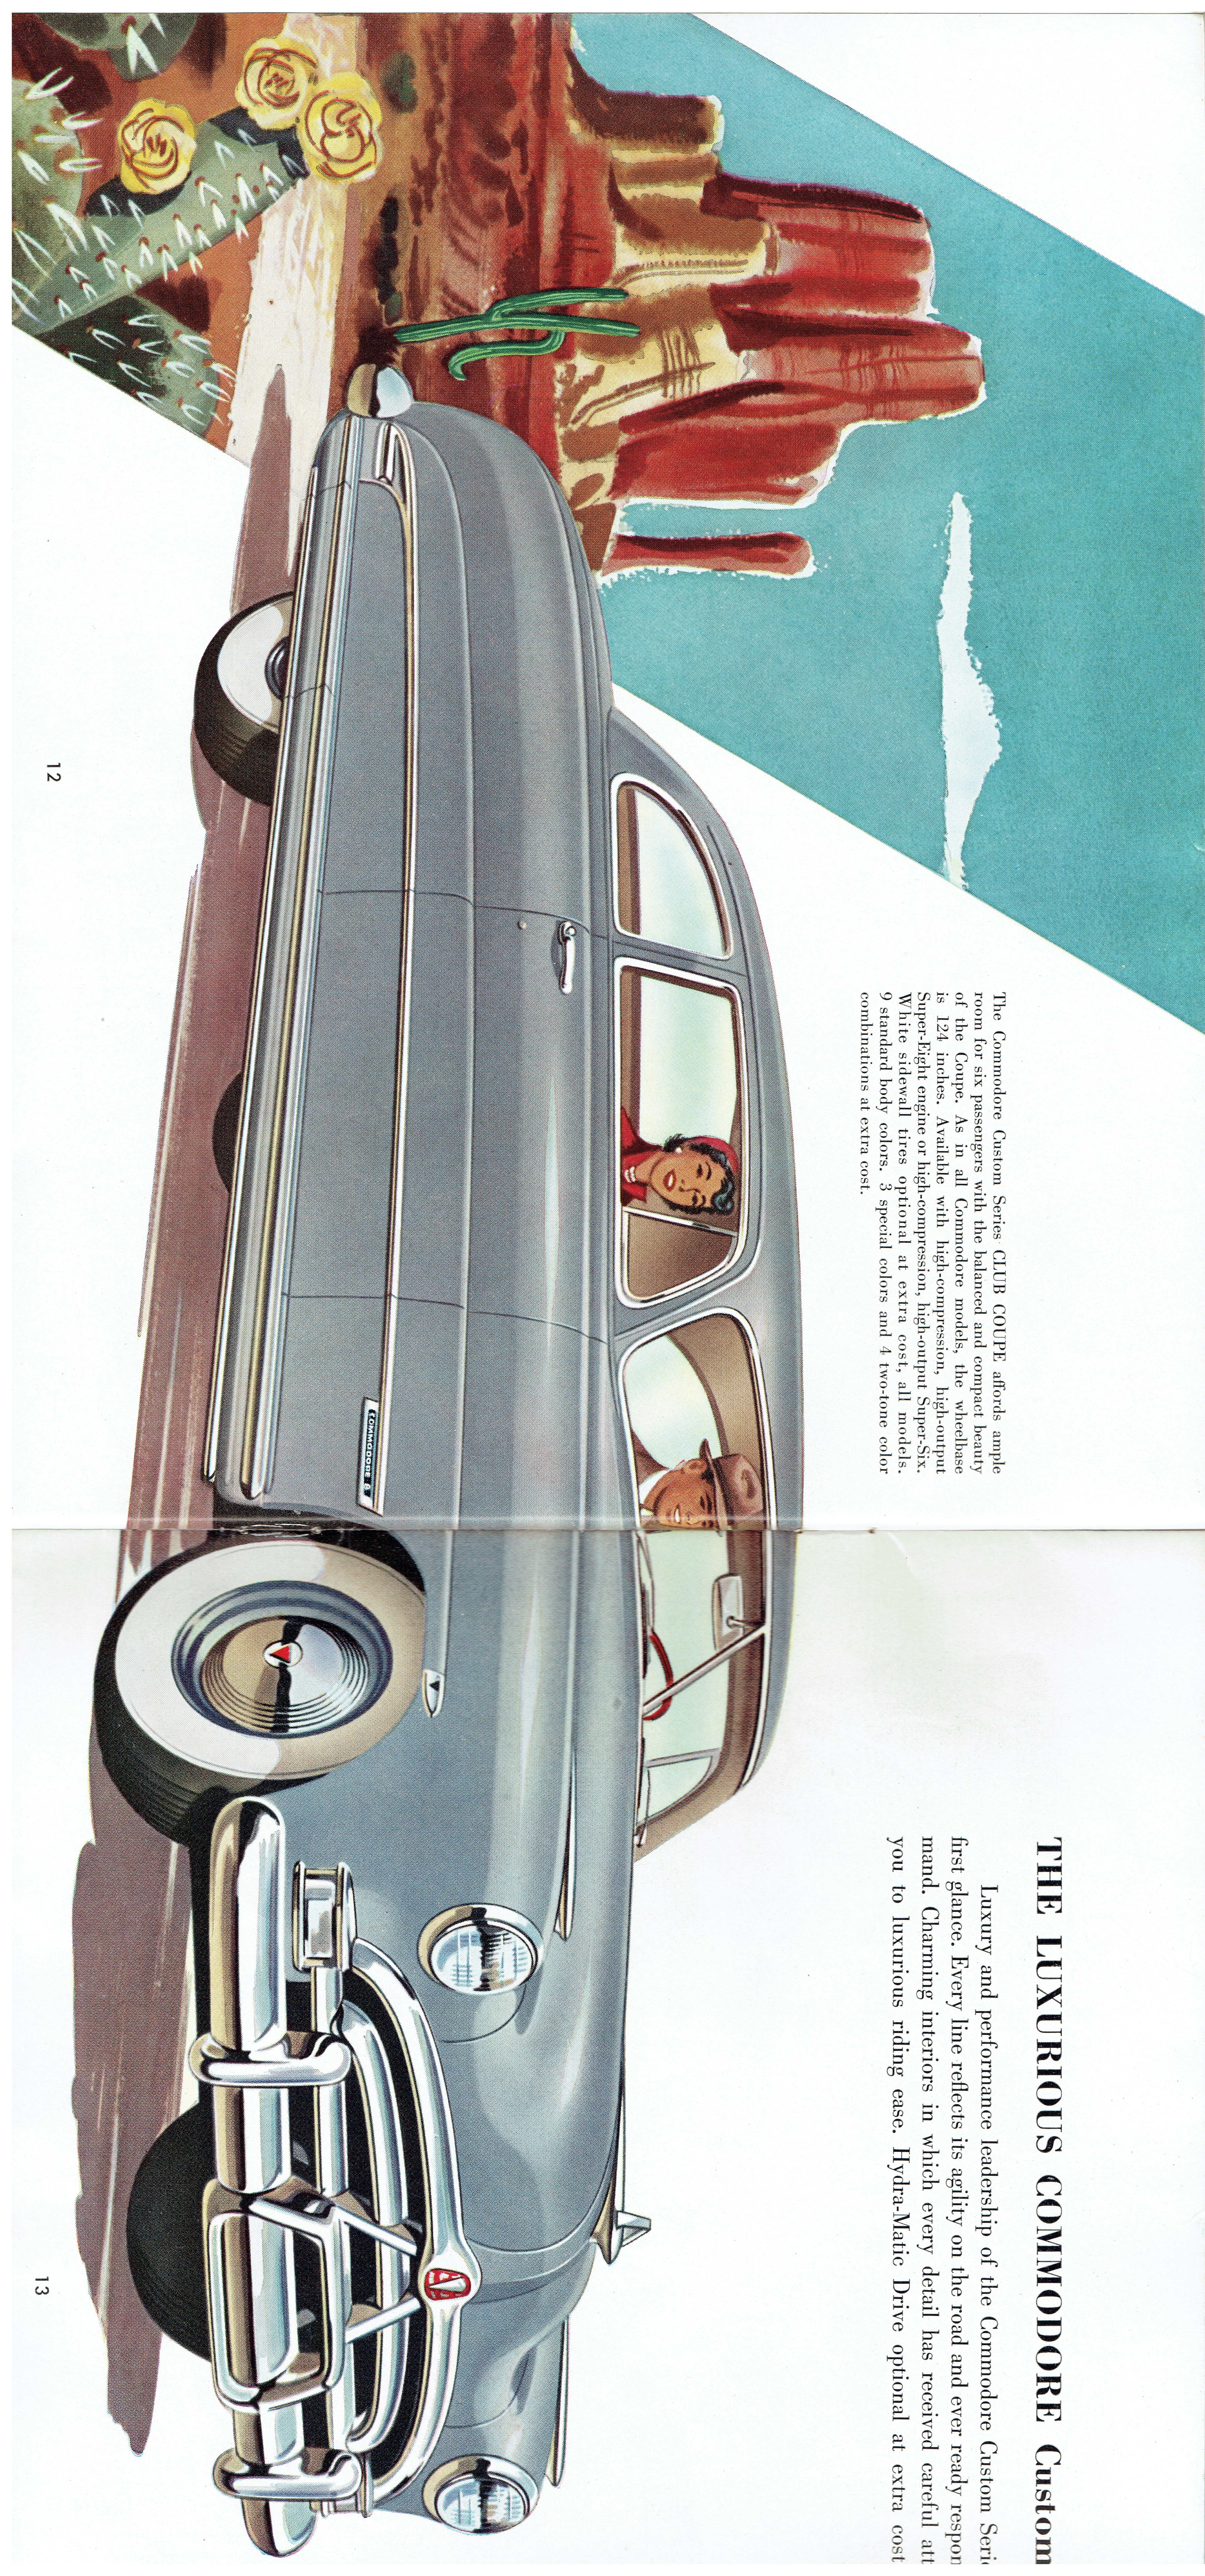 1951 Hudson (12)